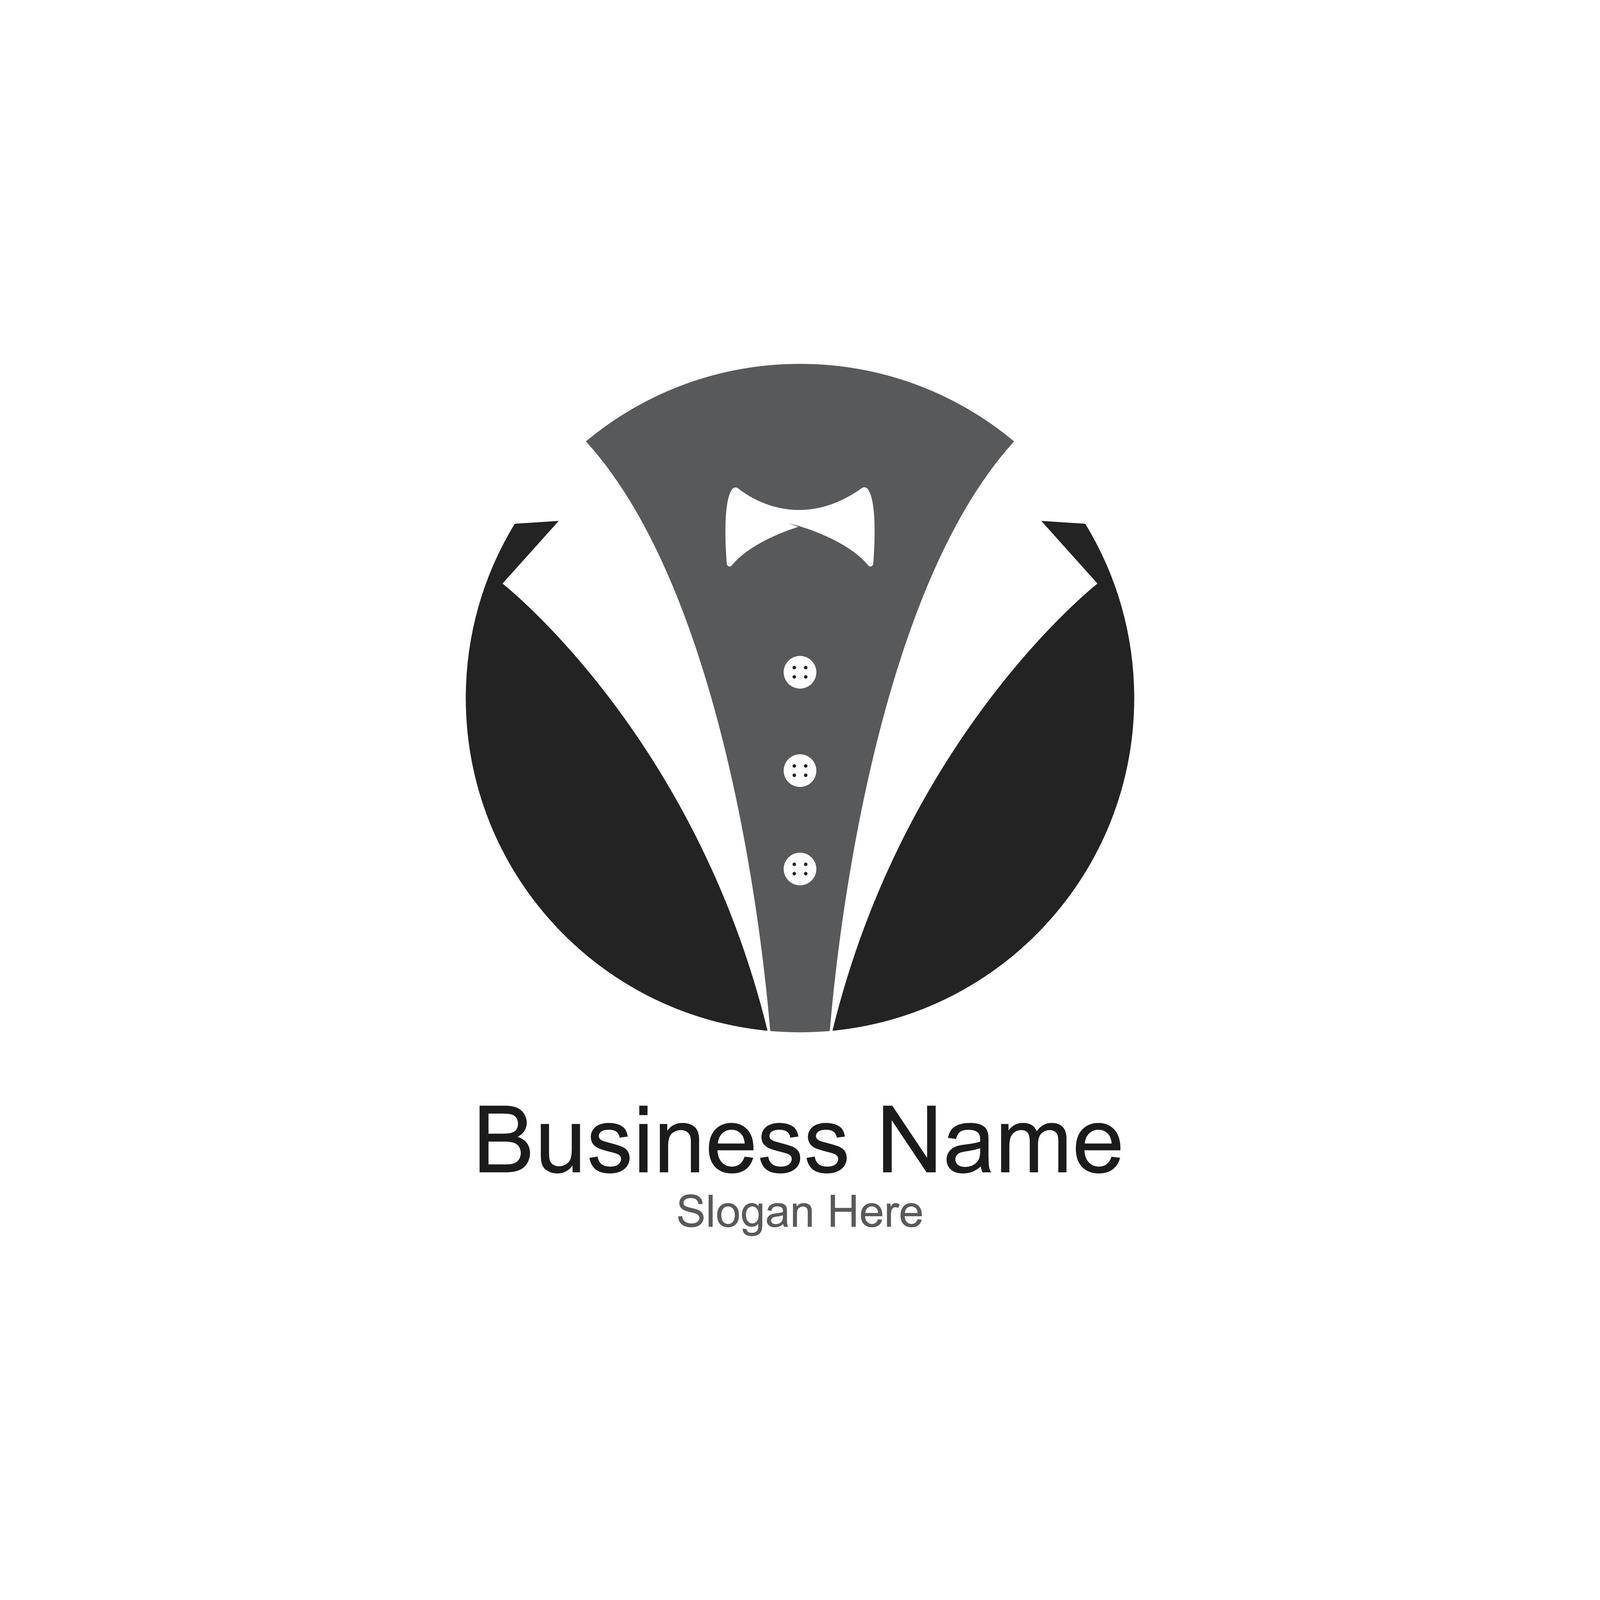 Tuxedo gentleman logo design vector by Amin89